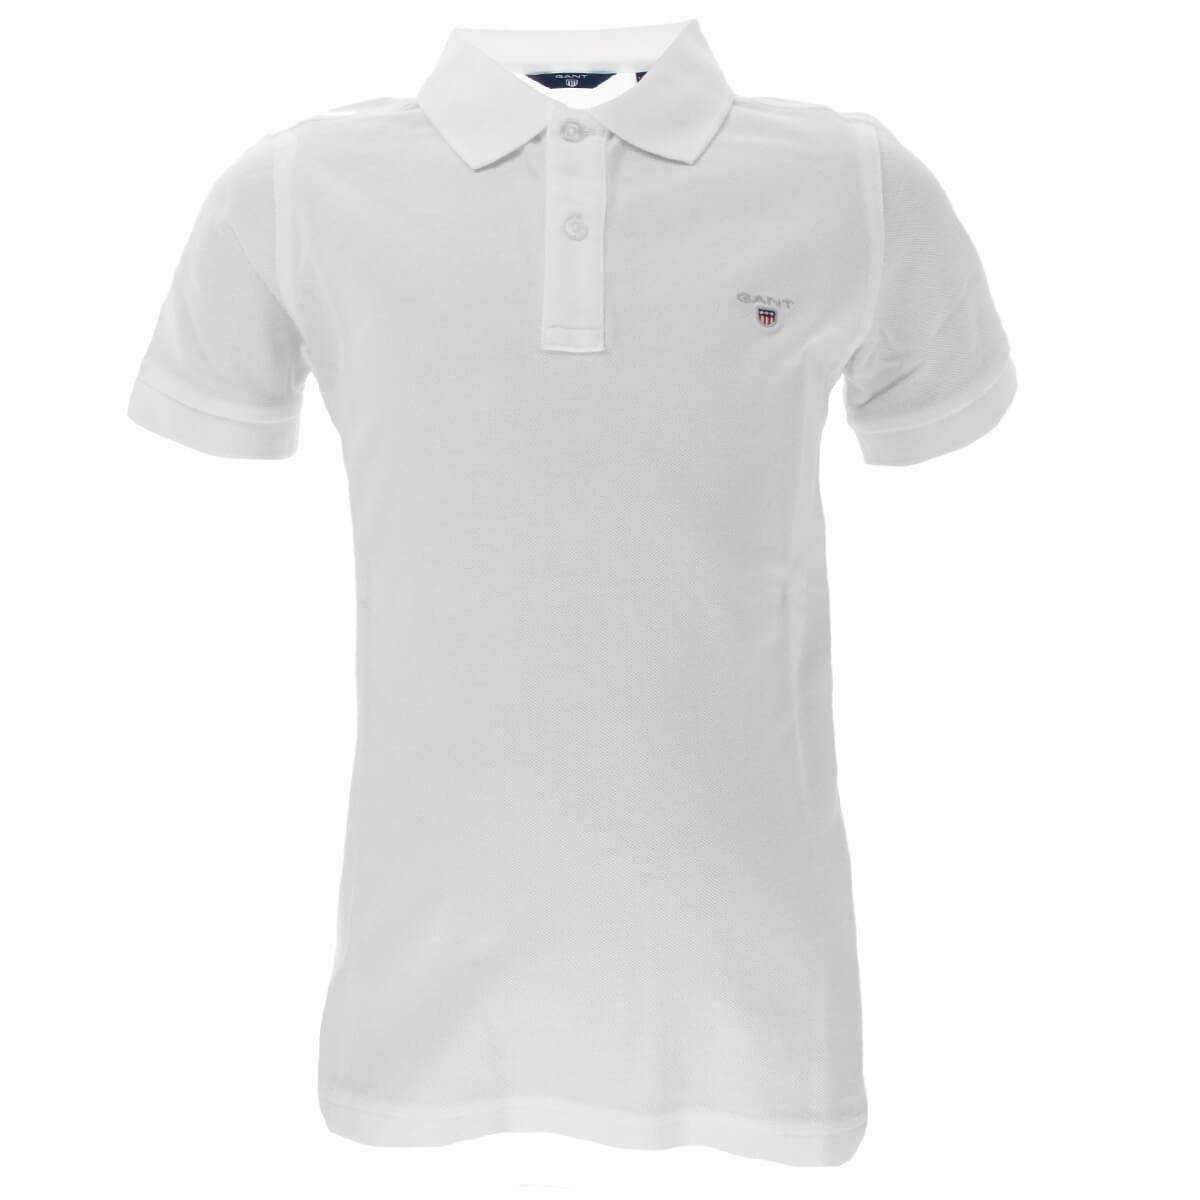 Poloshirt Poloshirt aus Unisex Pique Baumwolle 902201 Weiß(110) Kinder Gant Original